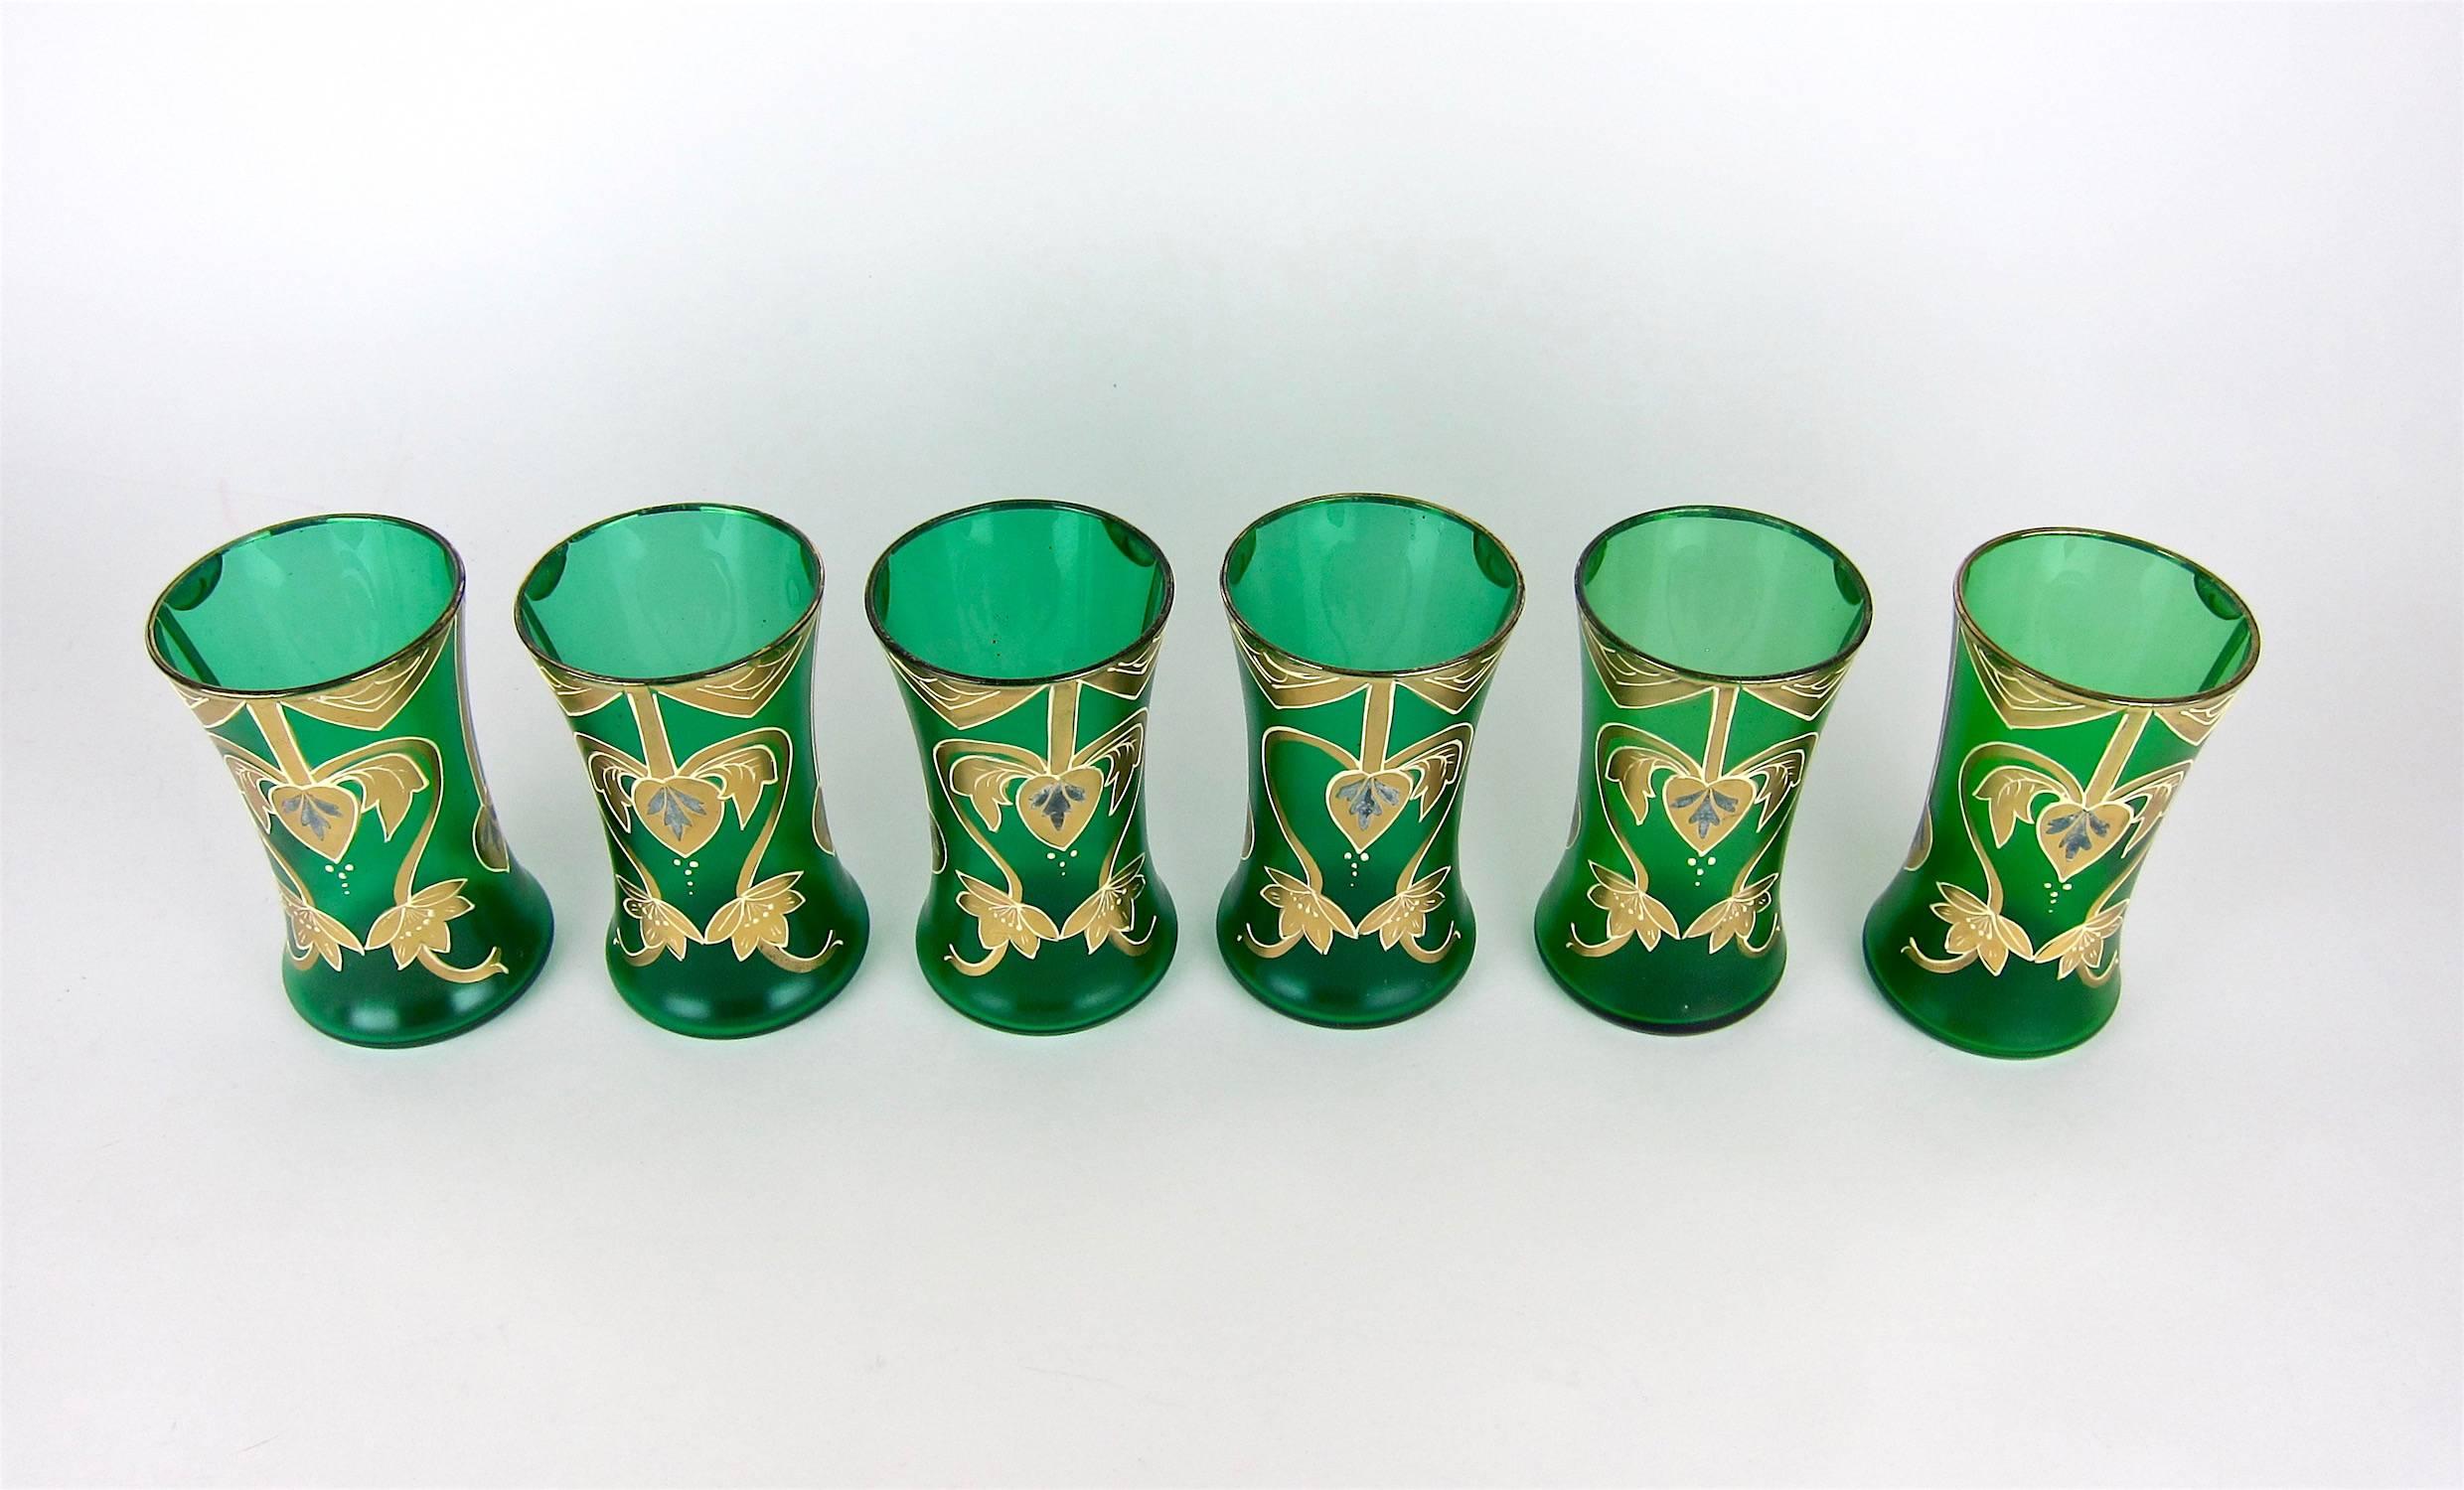 Antique Green Drinking Glasses with Golden Art Nouveau Enamel Decor 1